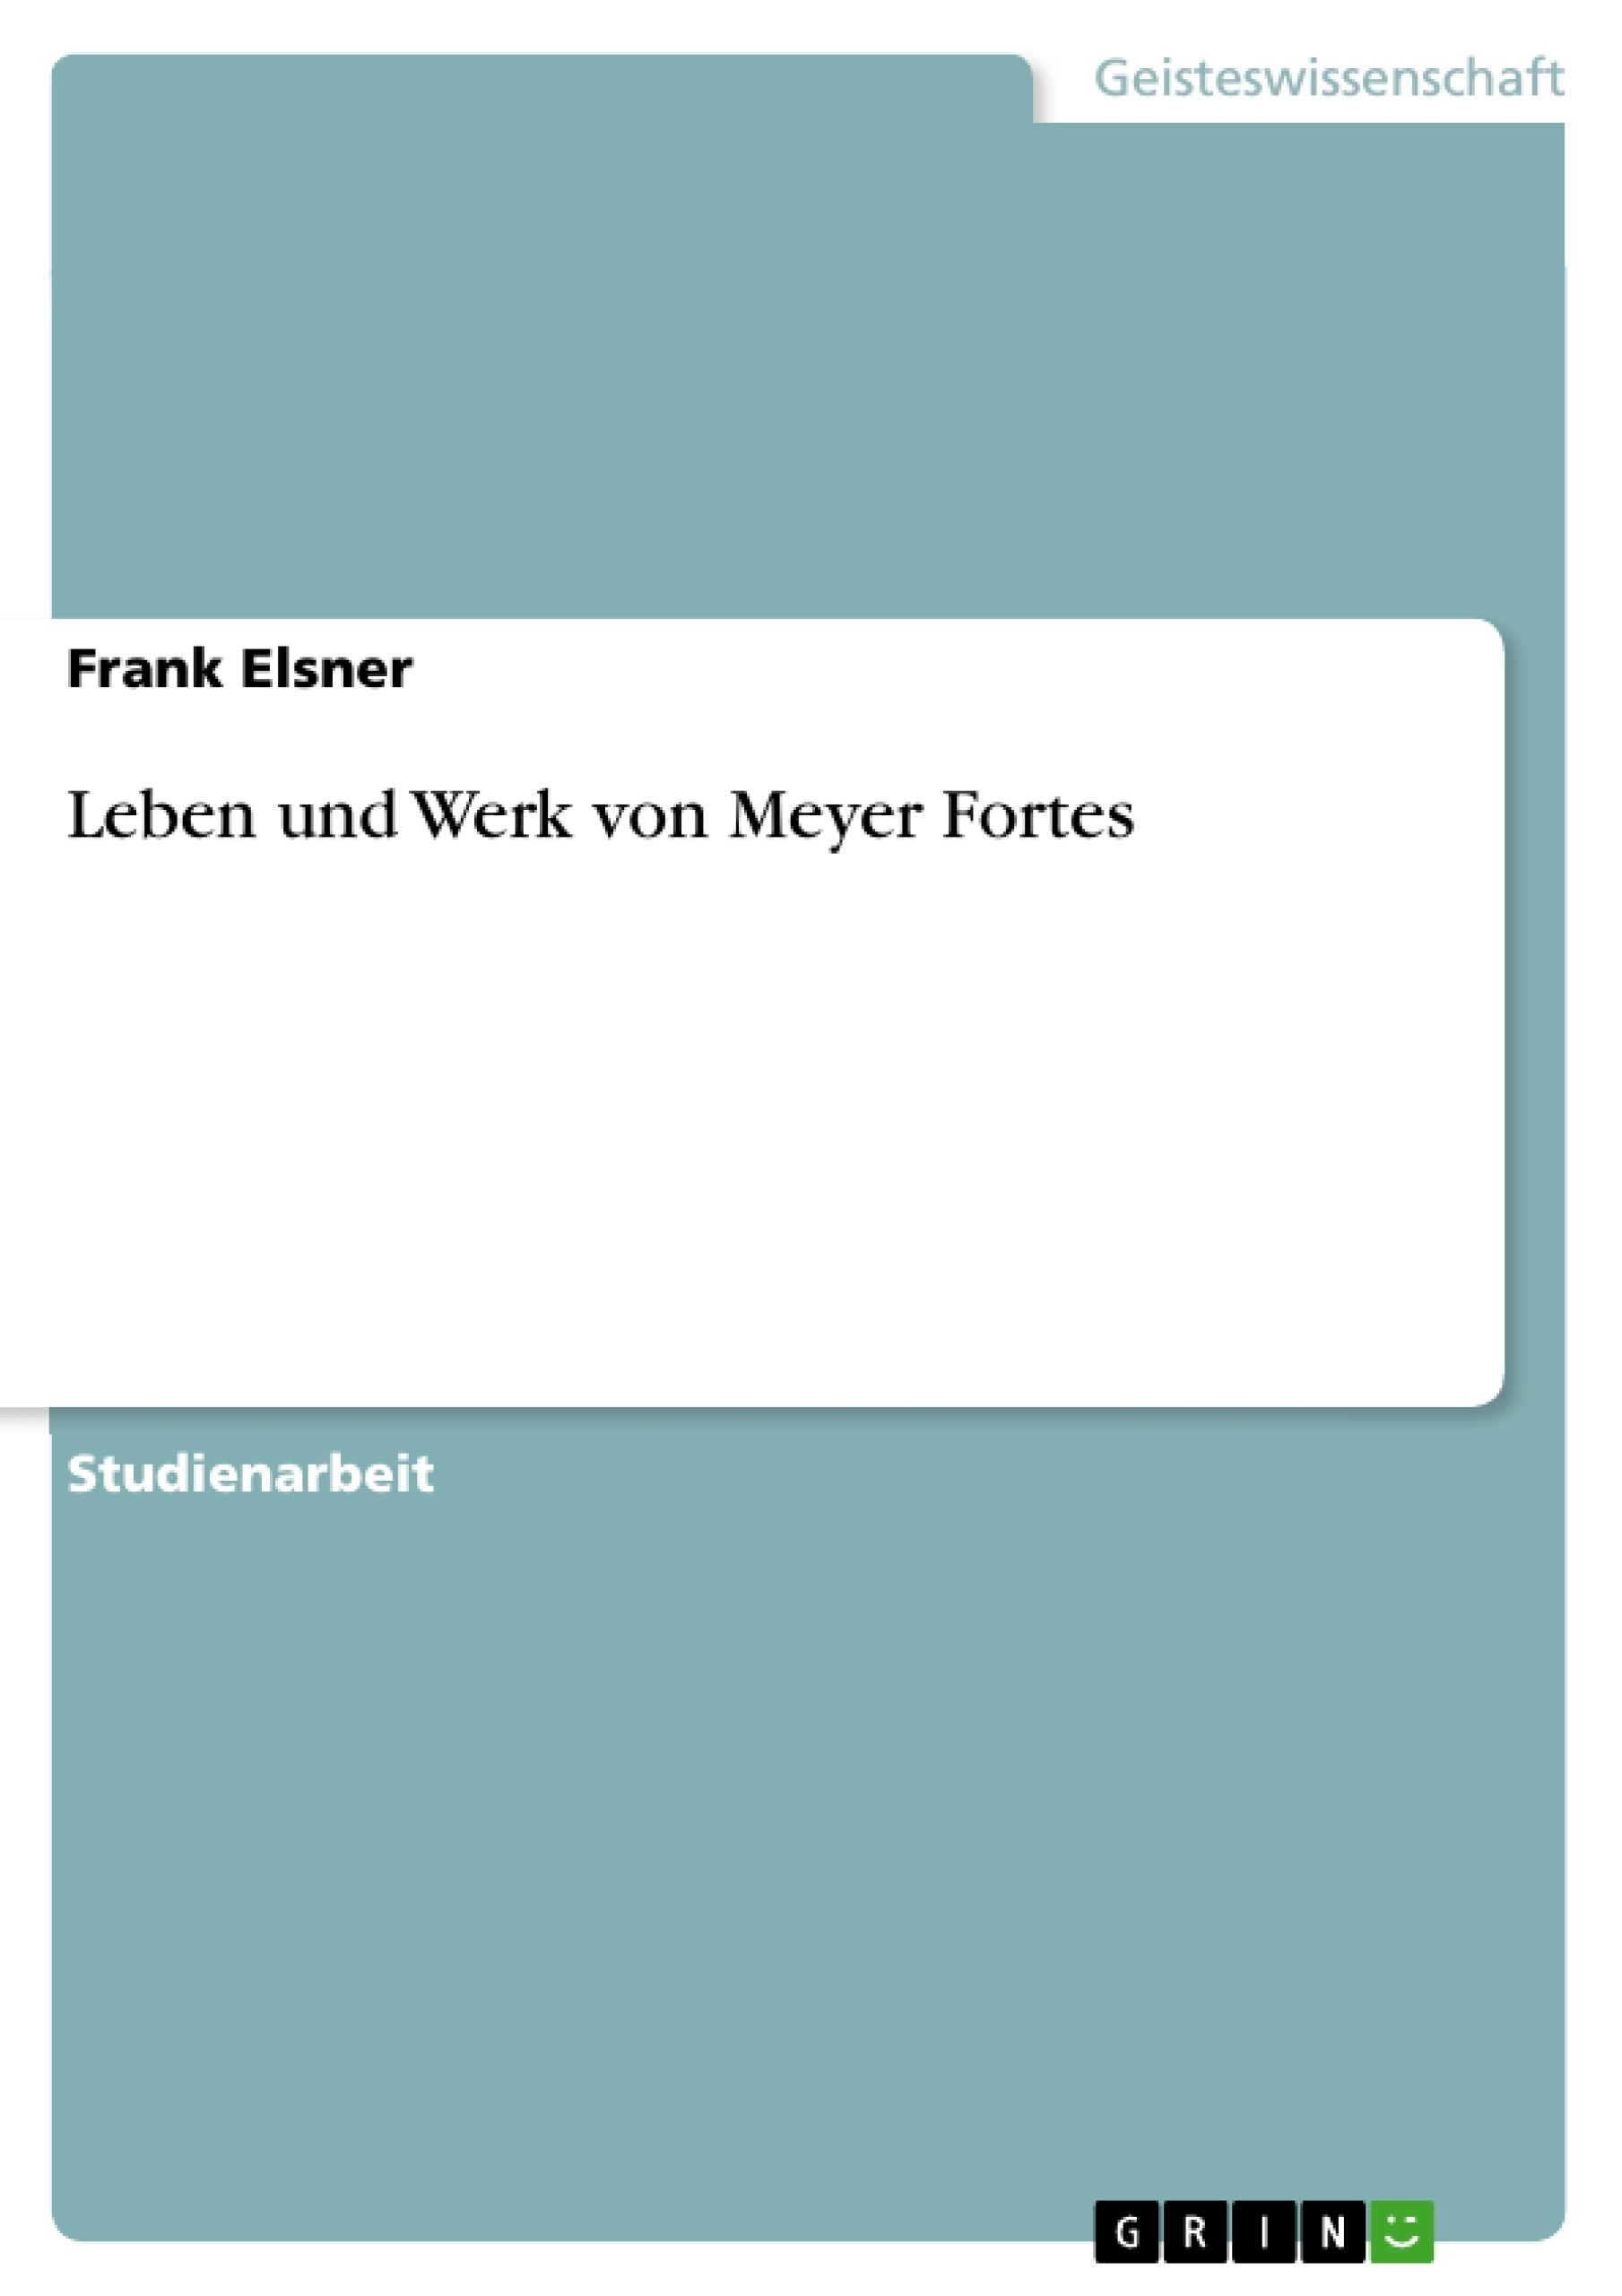 Título: Leben und Werk von Meyer Fortes